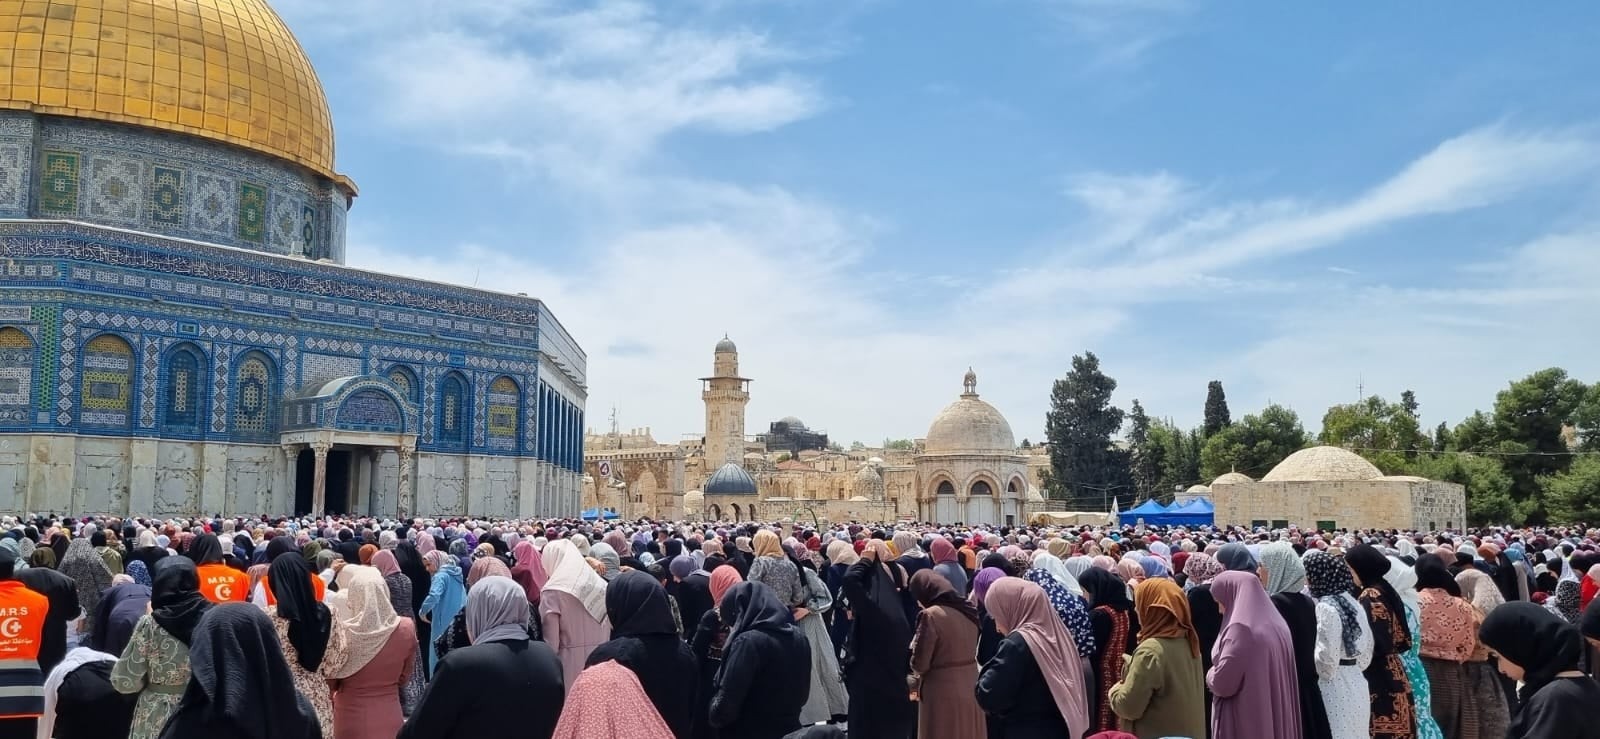 بالصور: عشرات آلاف المصلين يؤدّون صلاة الجمعة في المسجد الأقصى